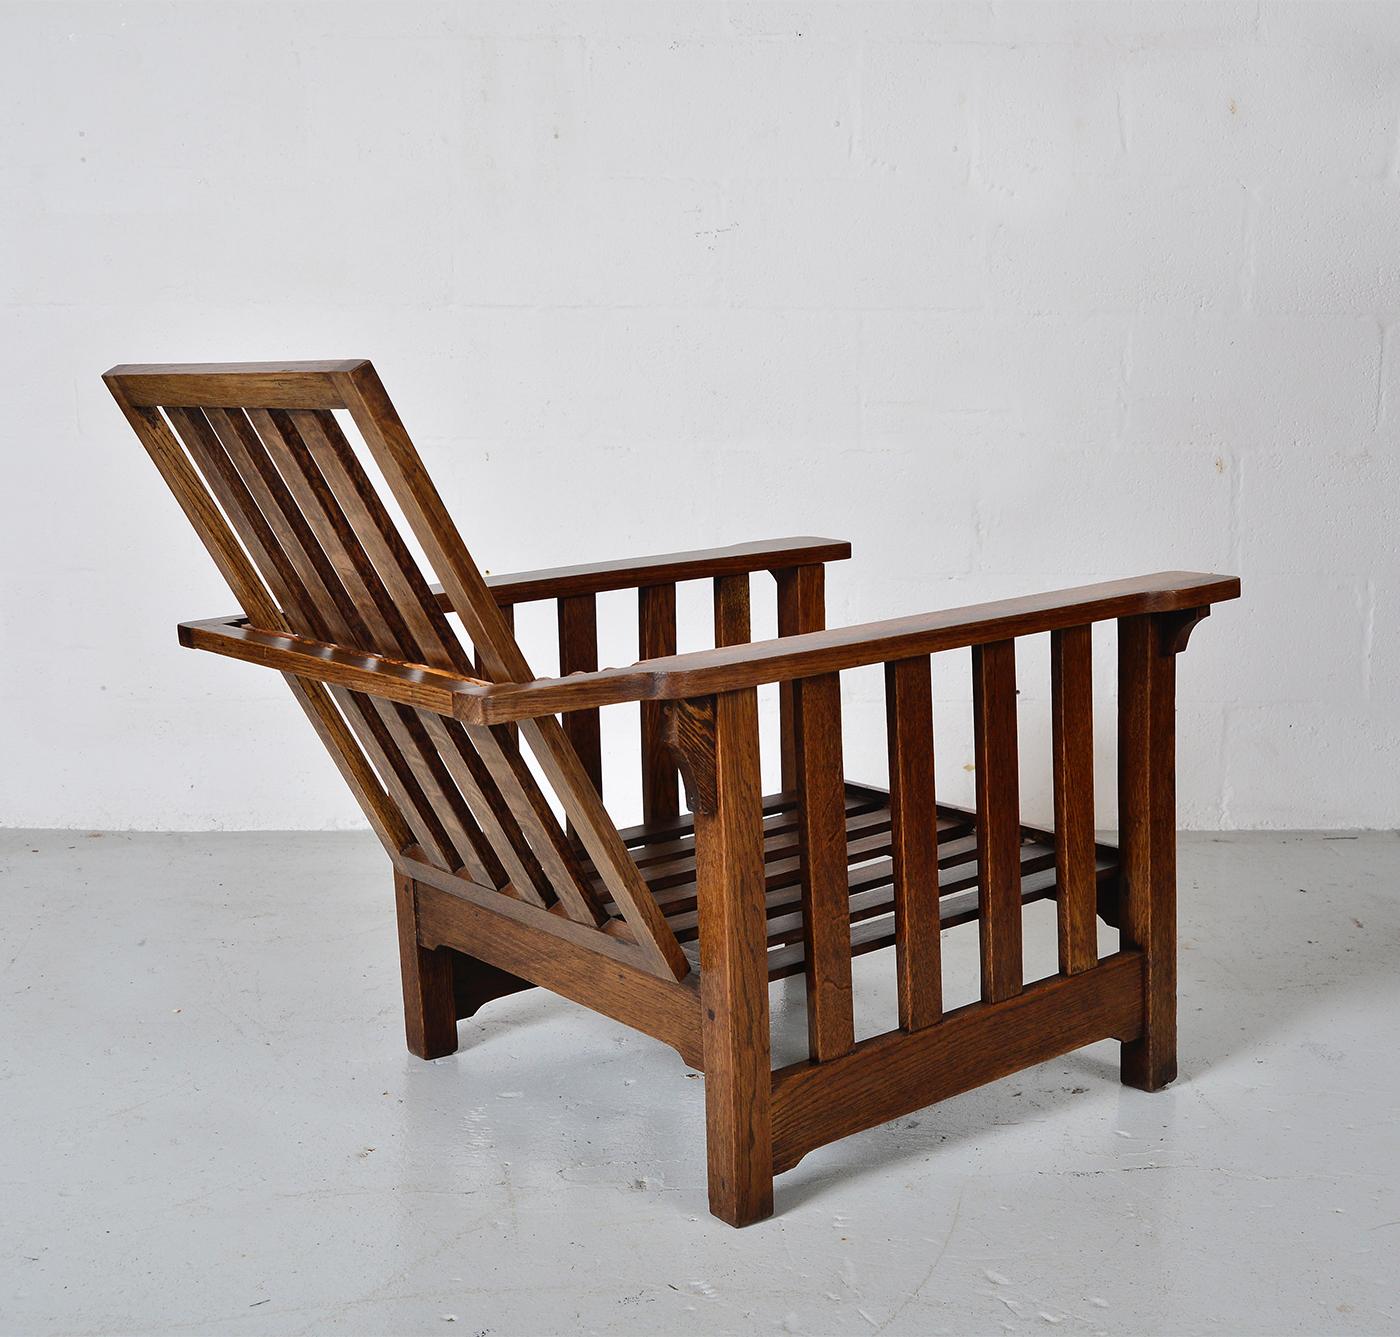 British Antique Oak Morris Chair Recliner Gustav Stickley Mission Eastlake Arts & Crafts